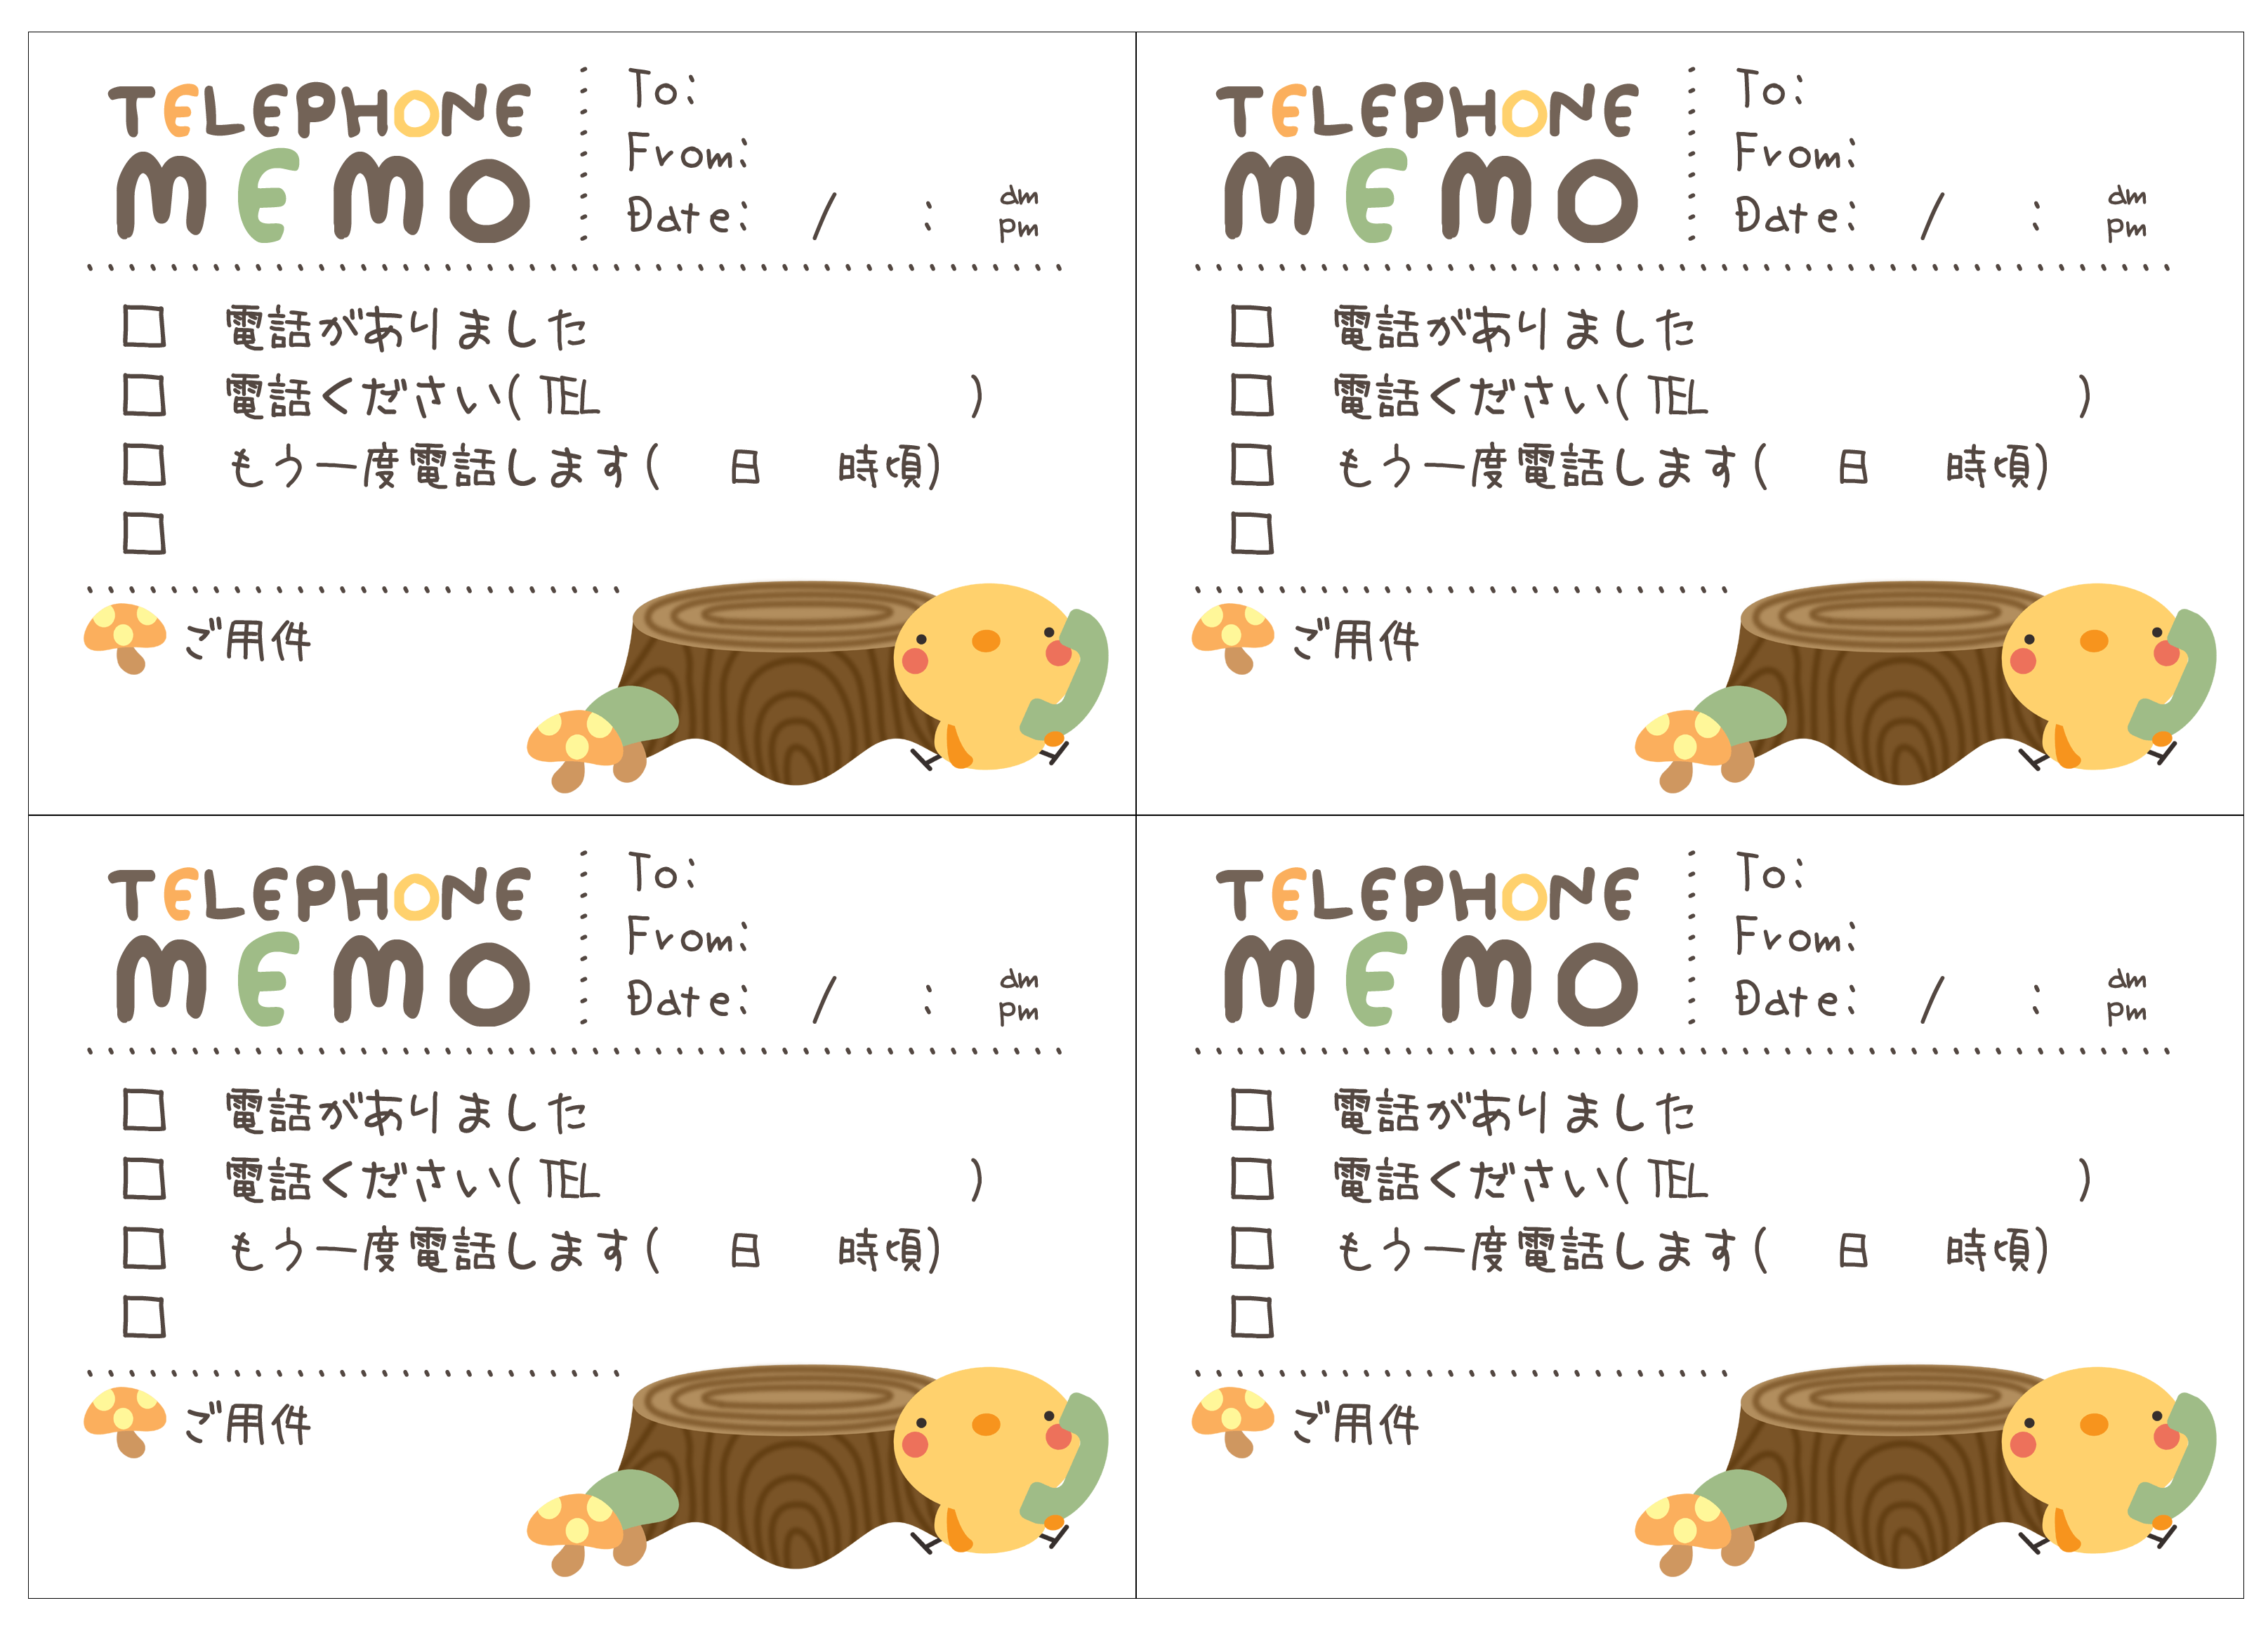 電話メモ 伝言メモの印刷素材 Mococo Print